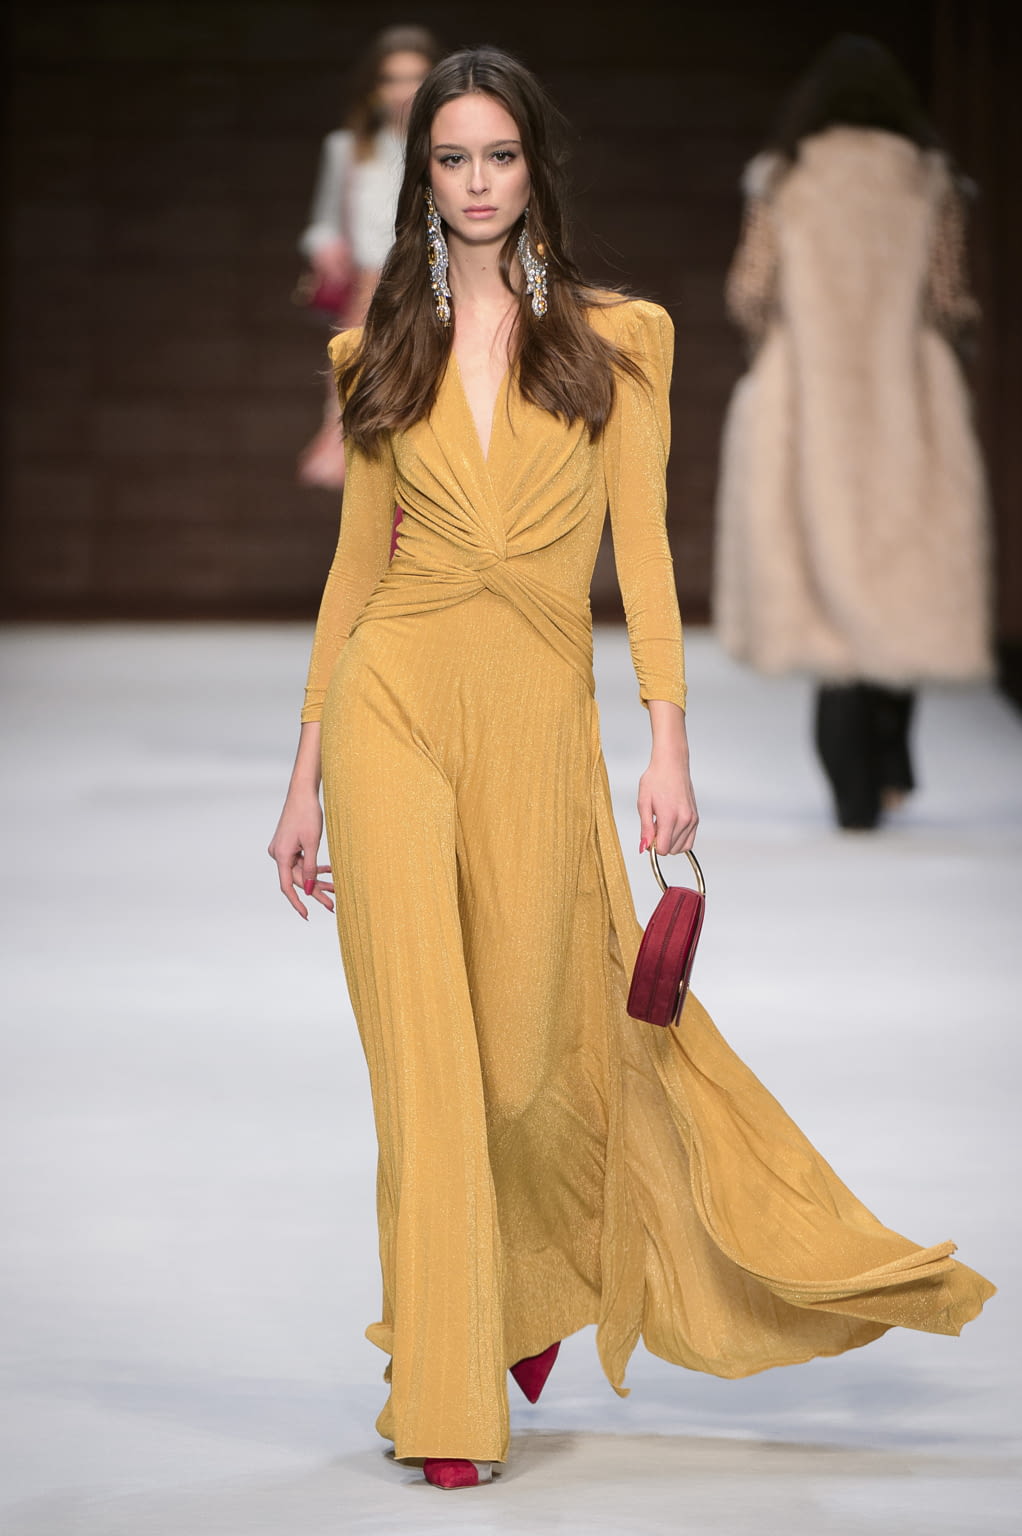 Elisabetta Franchi F/W 18 womenswear #40 - Tagwalk: The Fashion Search ...